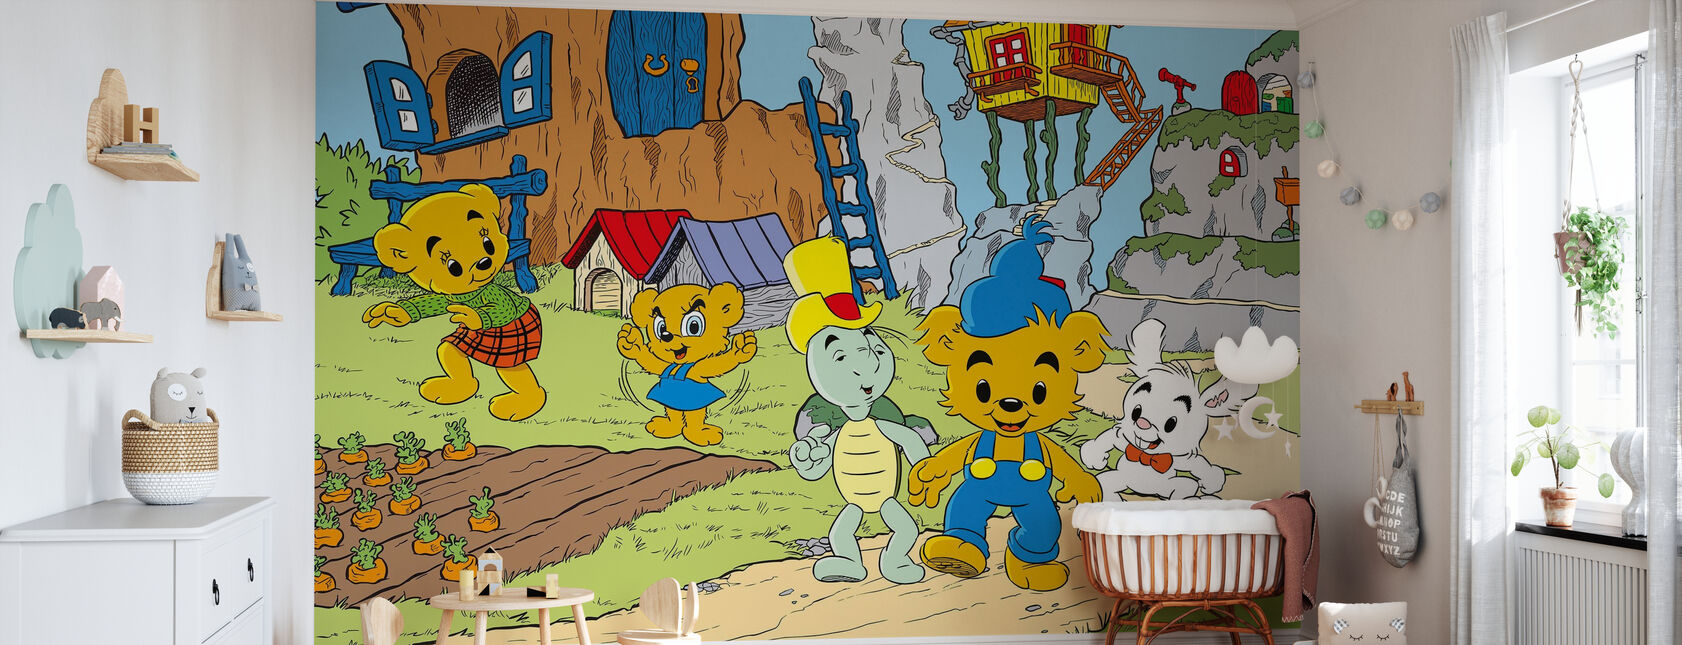 Teddy Bear - World's Strongest Bear - Wallpaper - Nursery